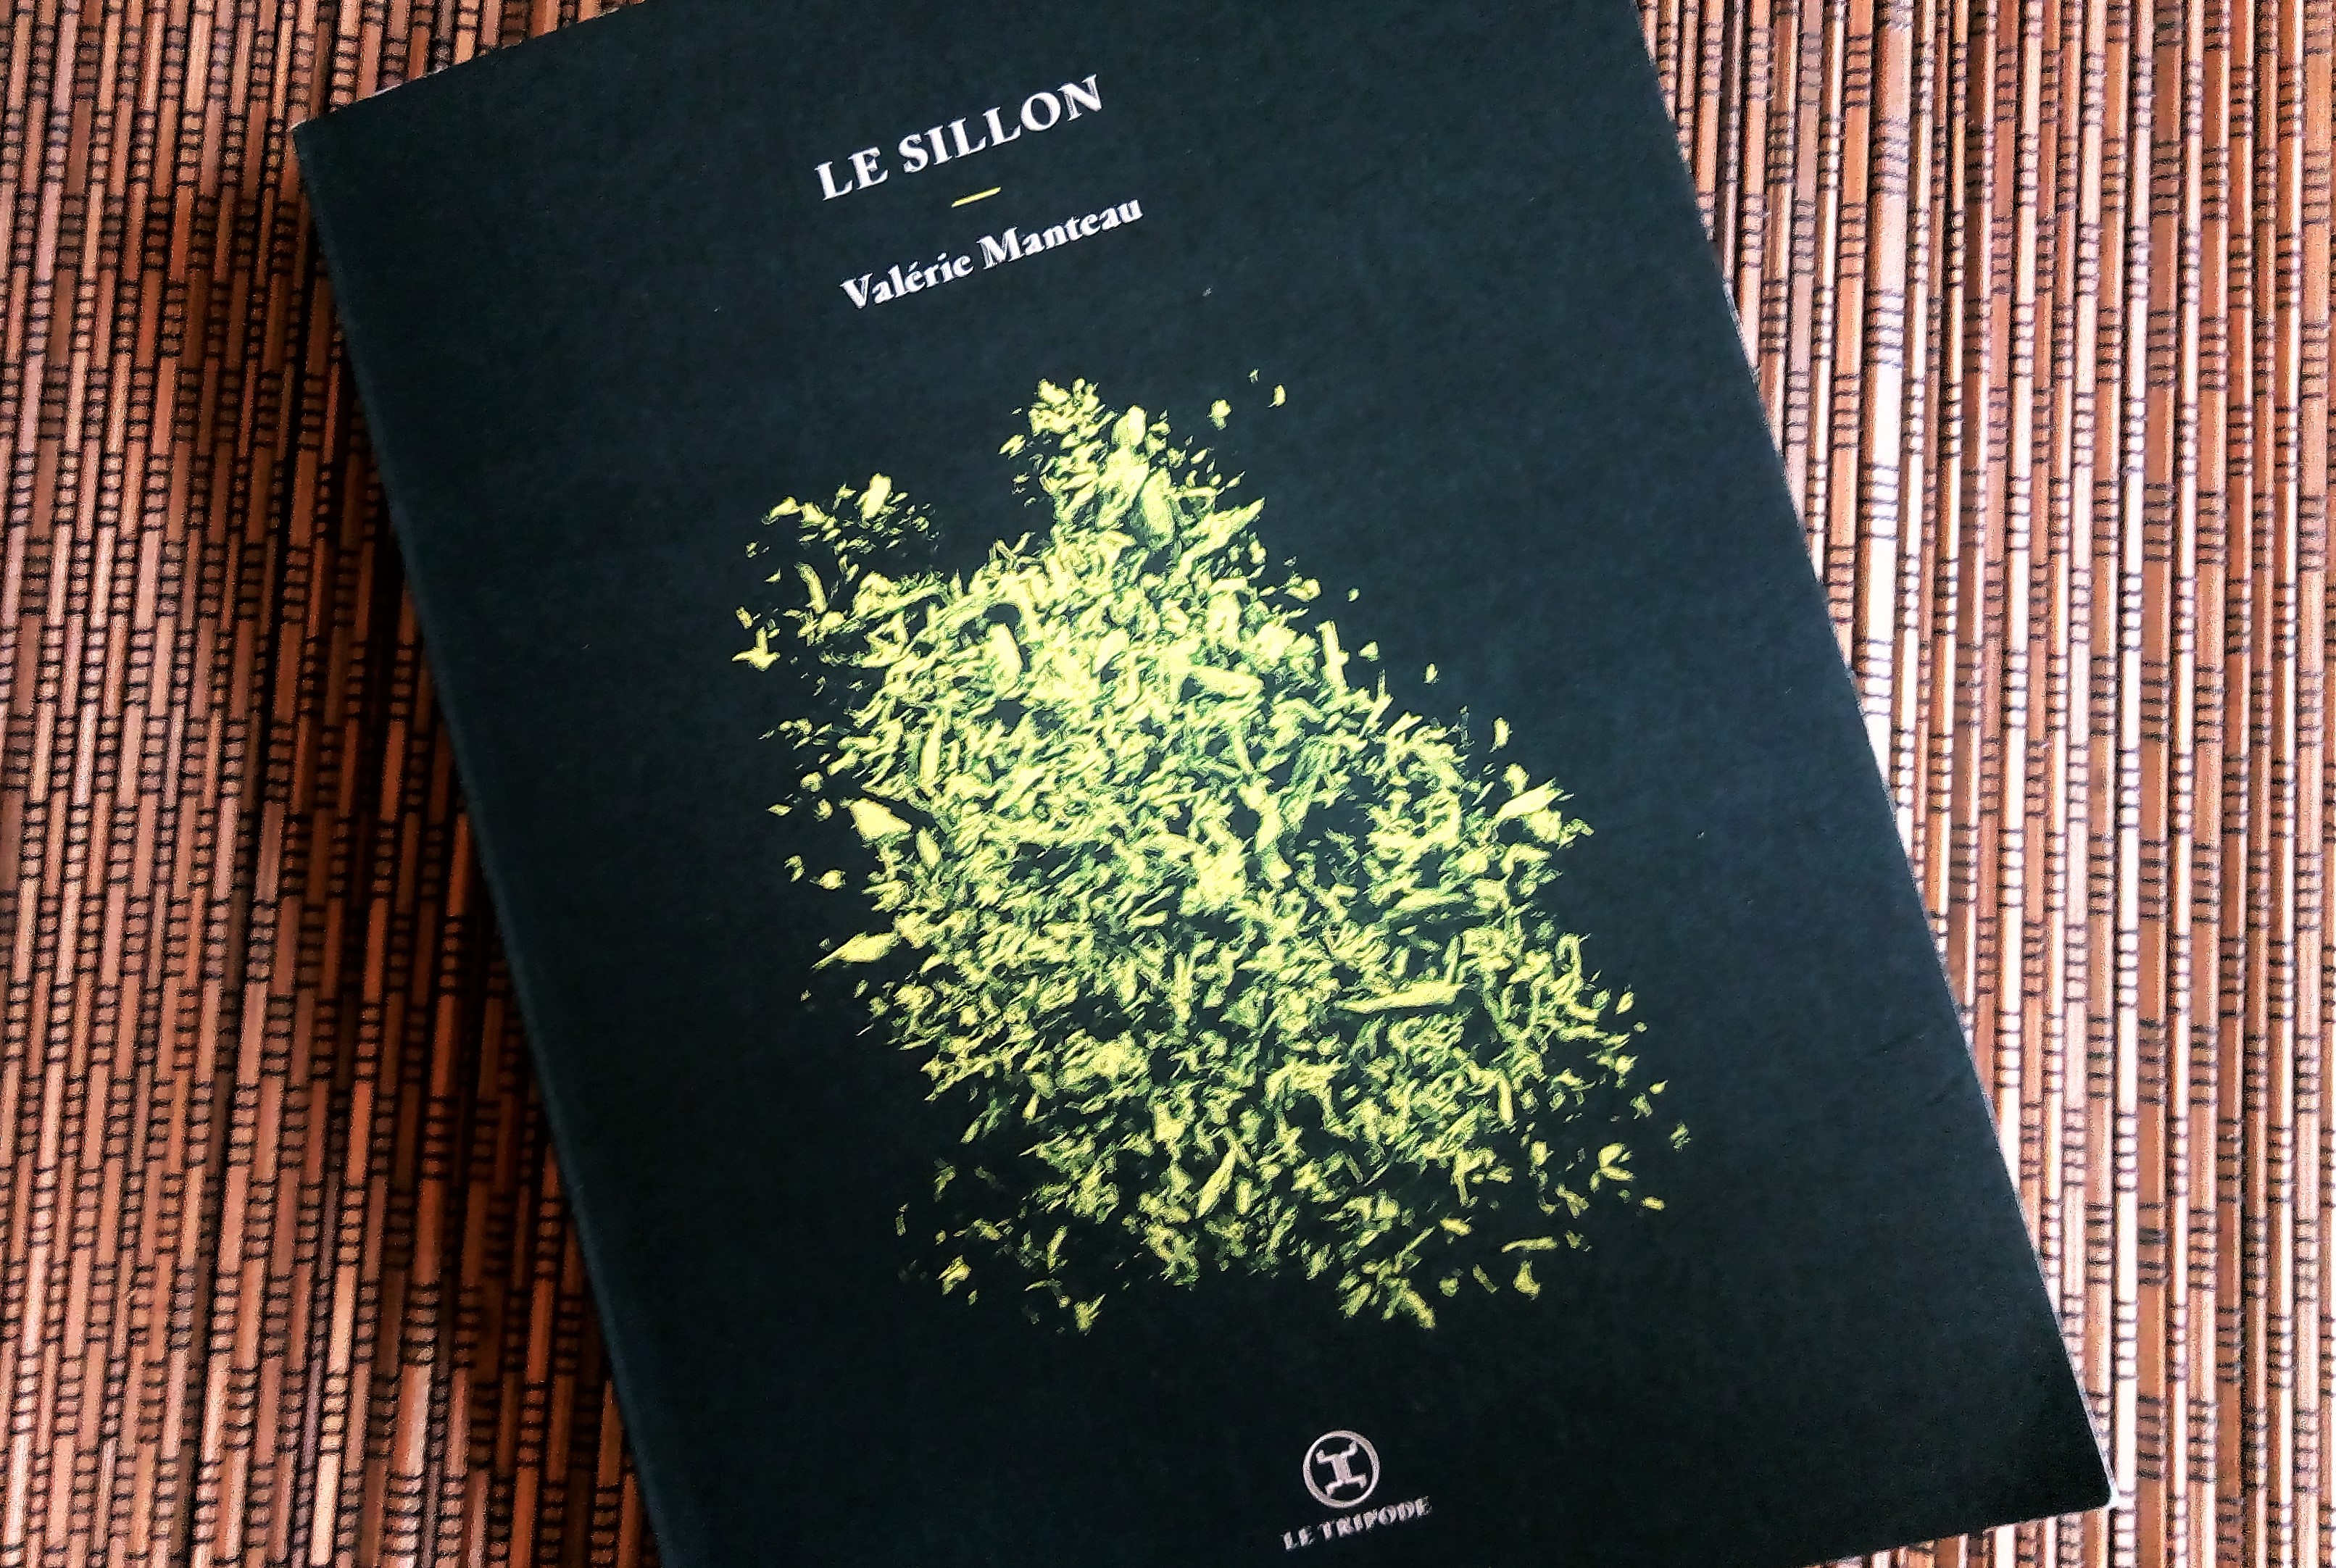 Couverture du livre le Sillon de Valérie manteau : des feuillages phosphorescents sur fond noir. Logo de l'éditeur Le Tripode